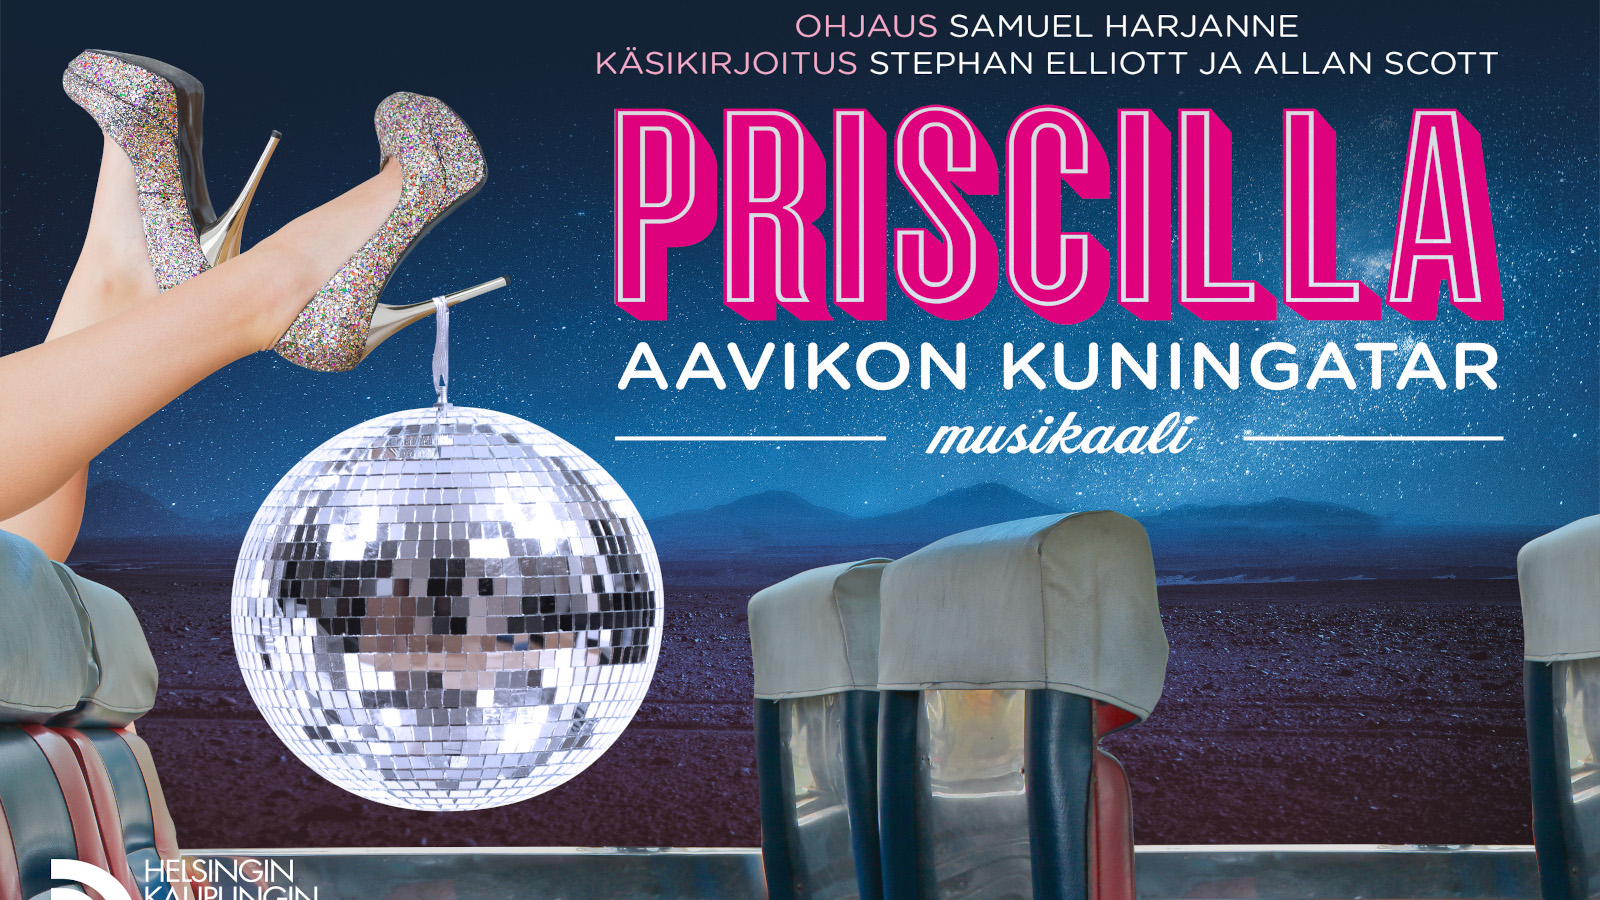 Teemu Kavaston suunnittelema juliste Helsingin Kaupunginteatterin 25.8.2022 ensi-iltaan tulevaan näytelmään Priscilla, aavikon kuningatar.